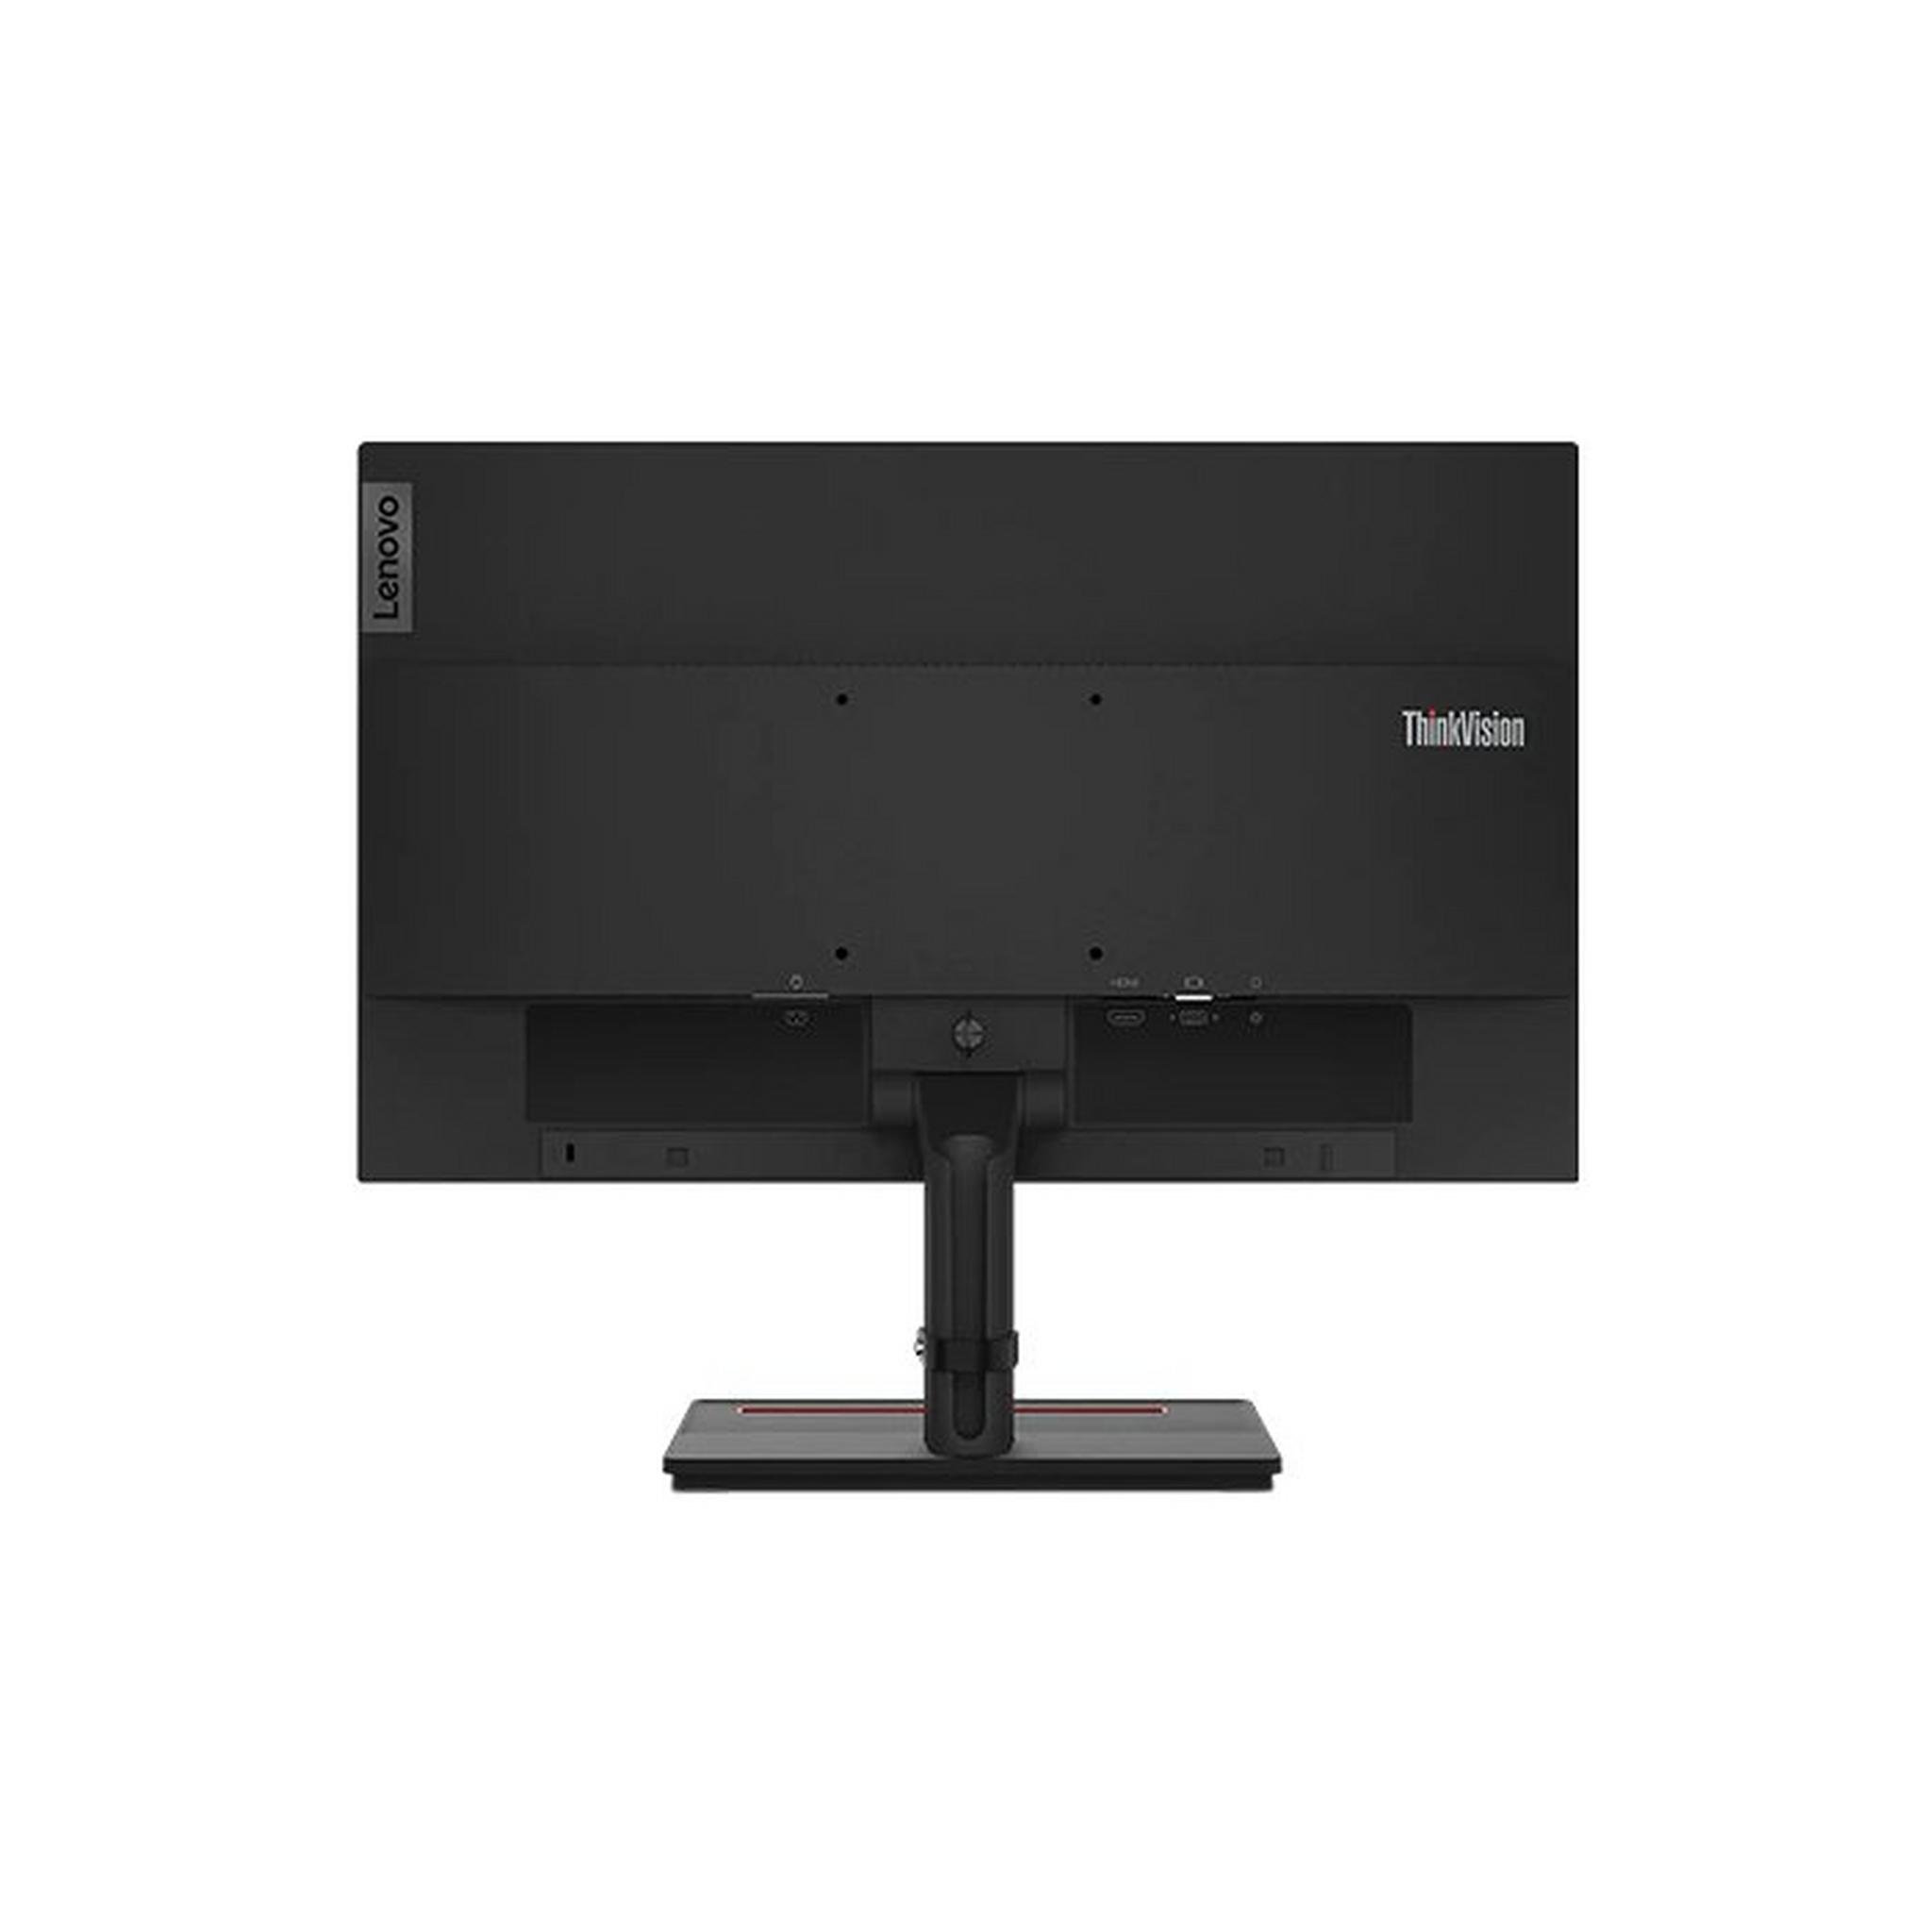 Lenovo S22e-20 Monitor, 21.5-inch, Resolution 1920x1080 – Black